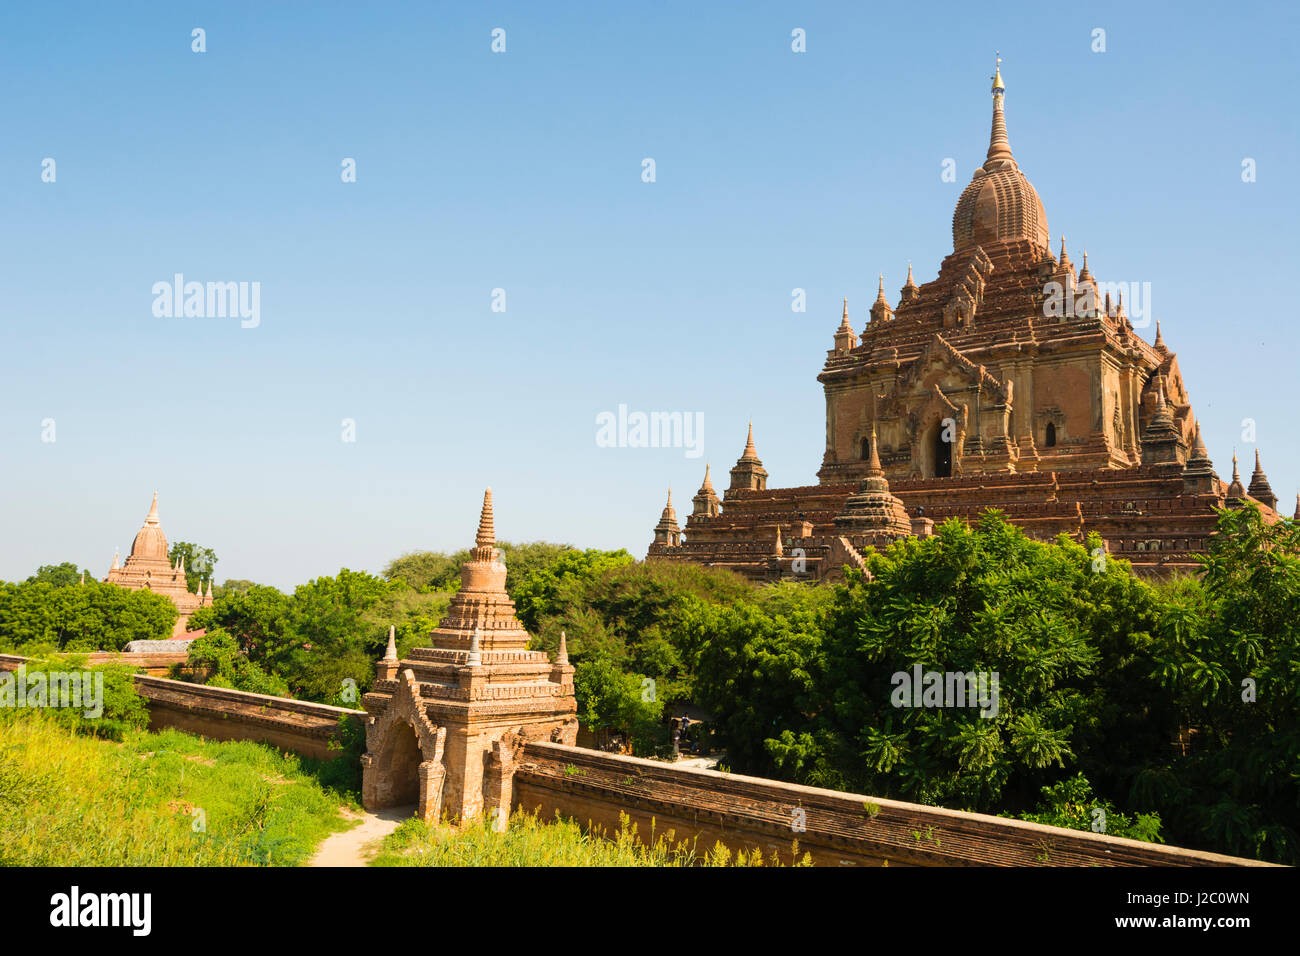 Myanmar. Bagan. Htilominlo Temple. Stock Photo